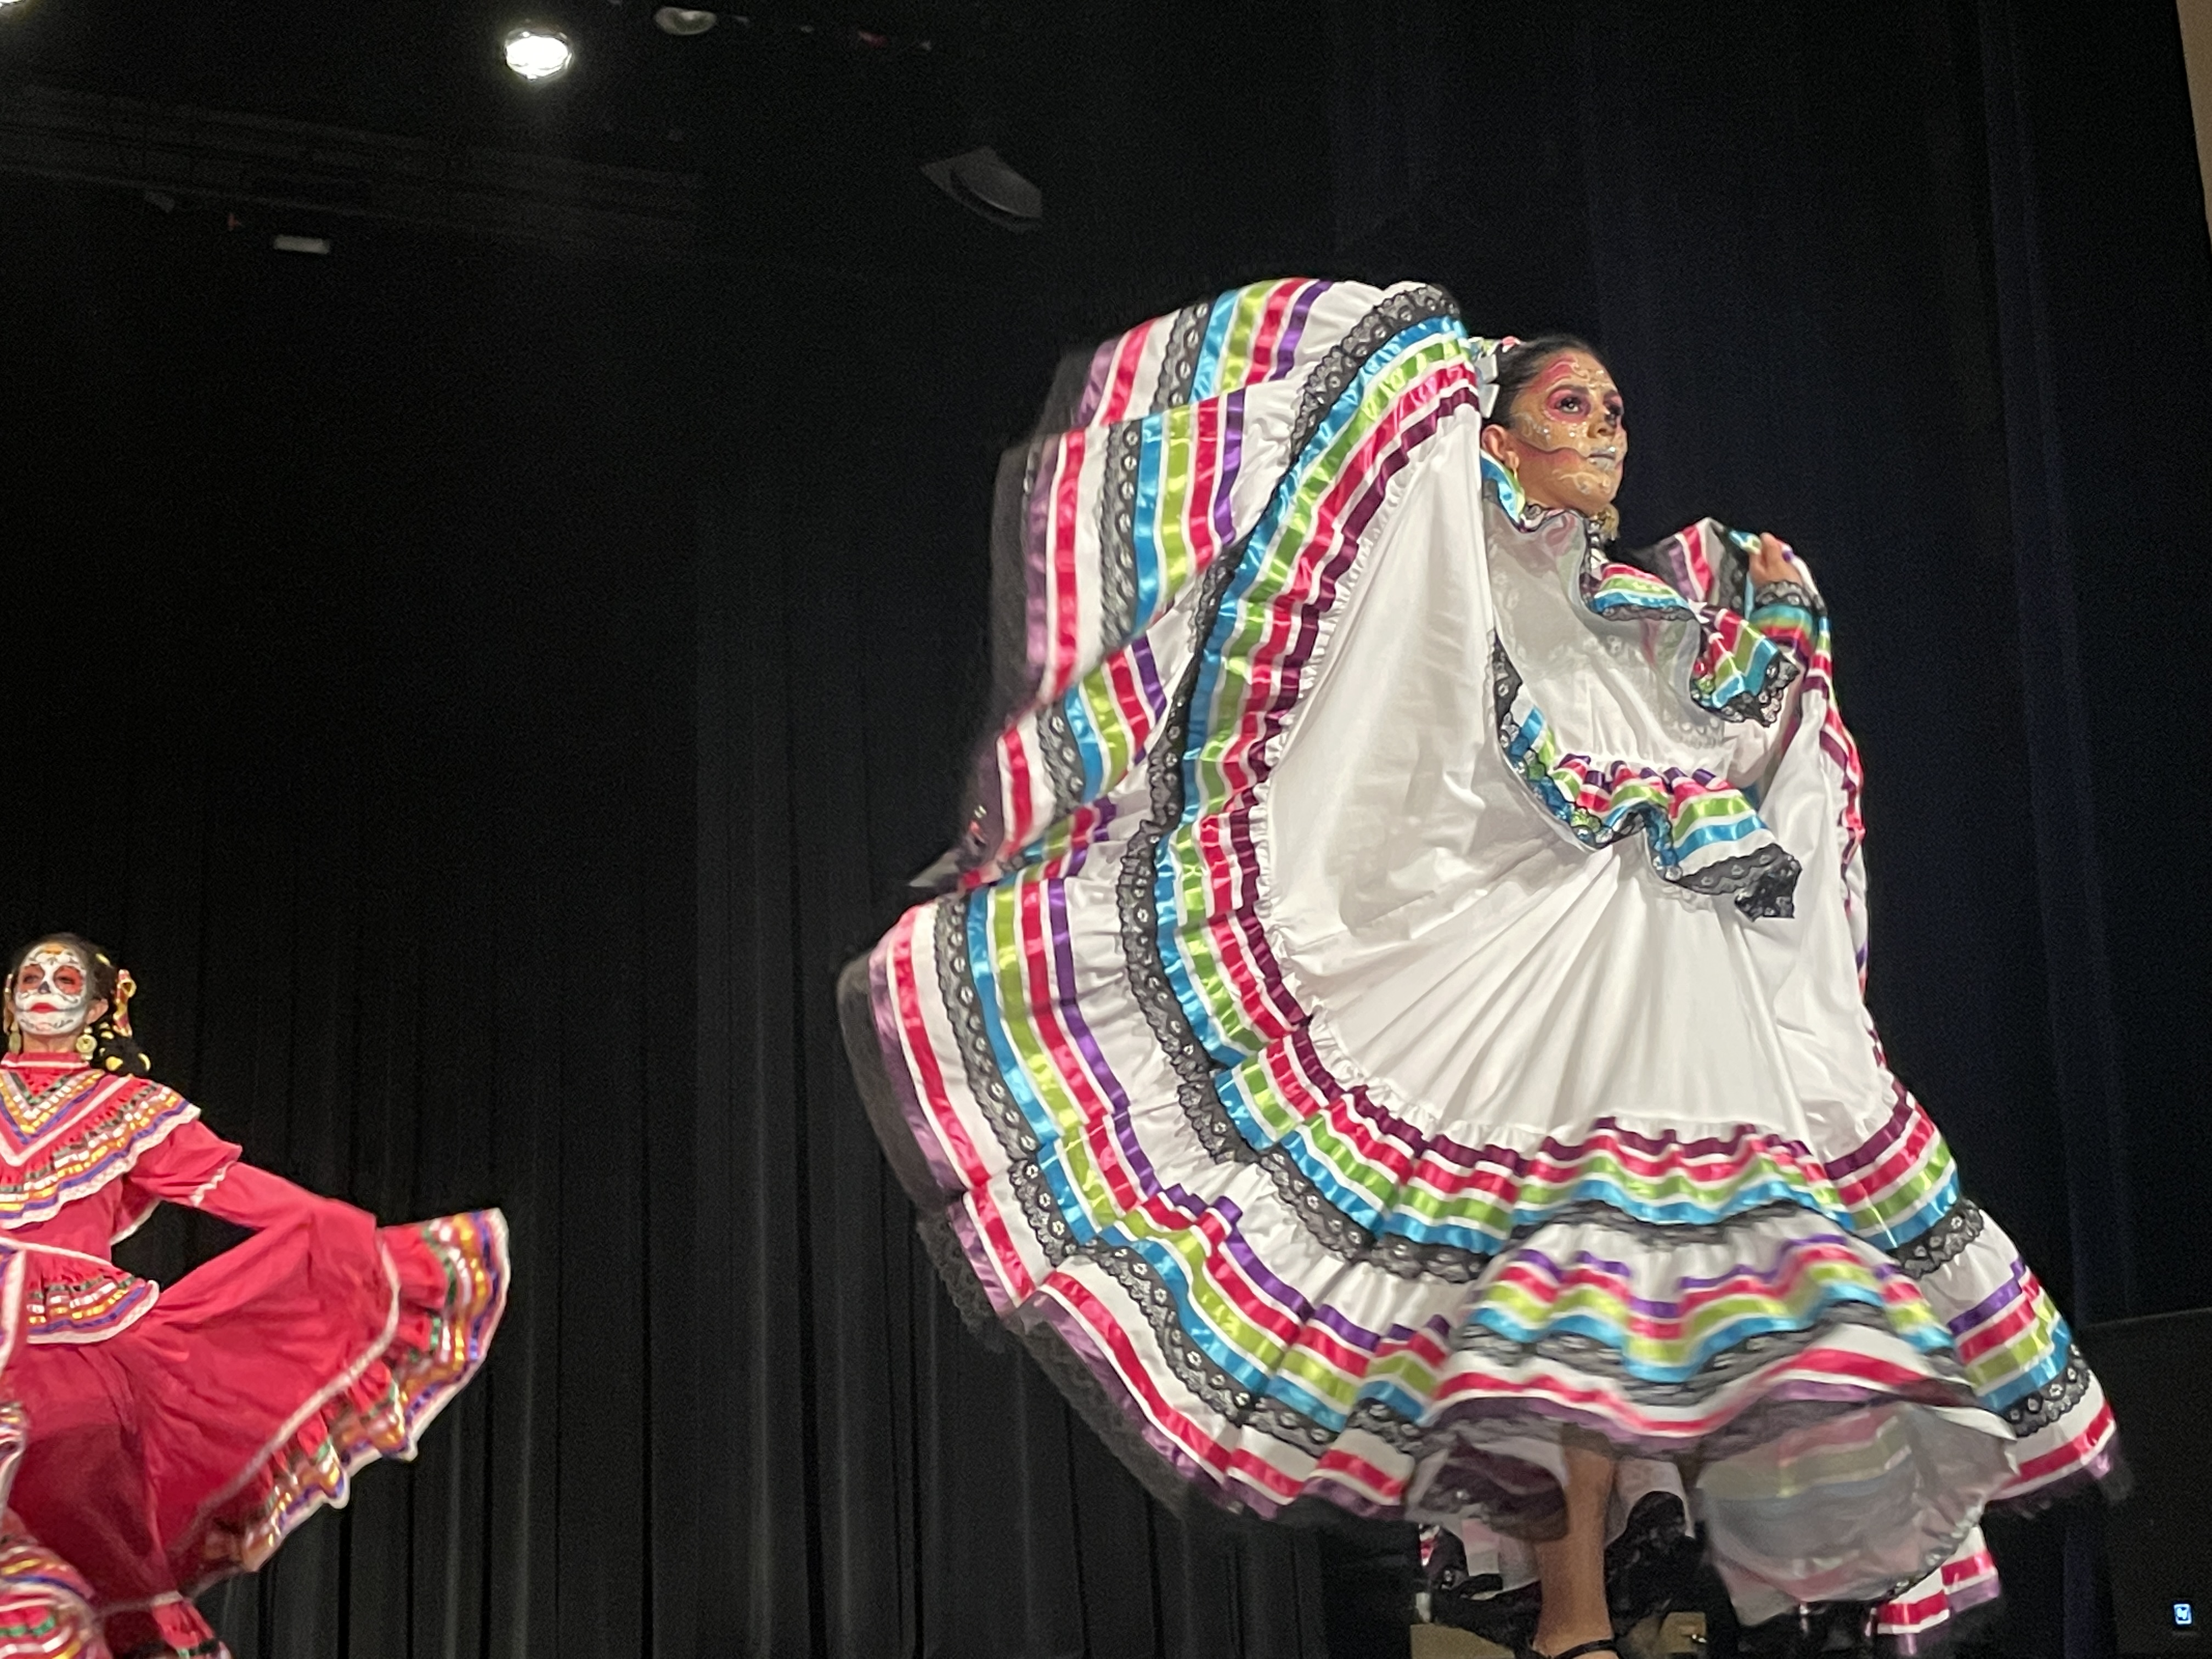 Performer in cultural attire for Dia de los Muertos on stage.